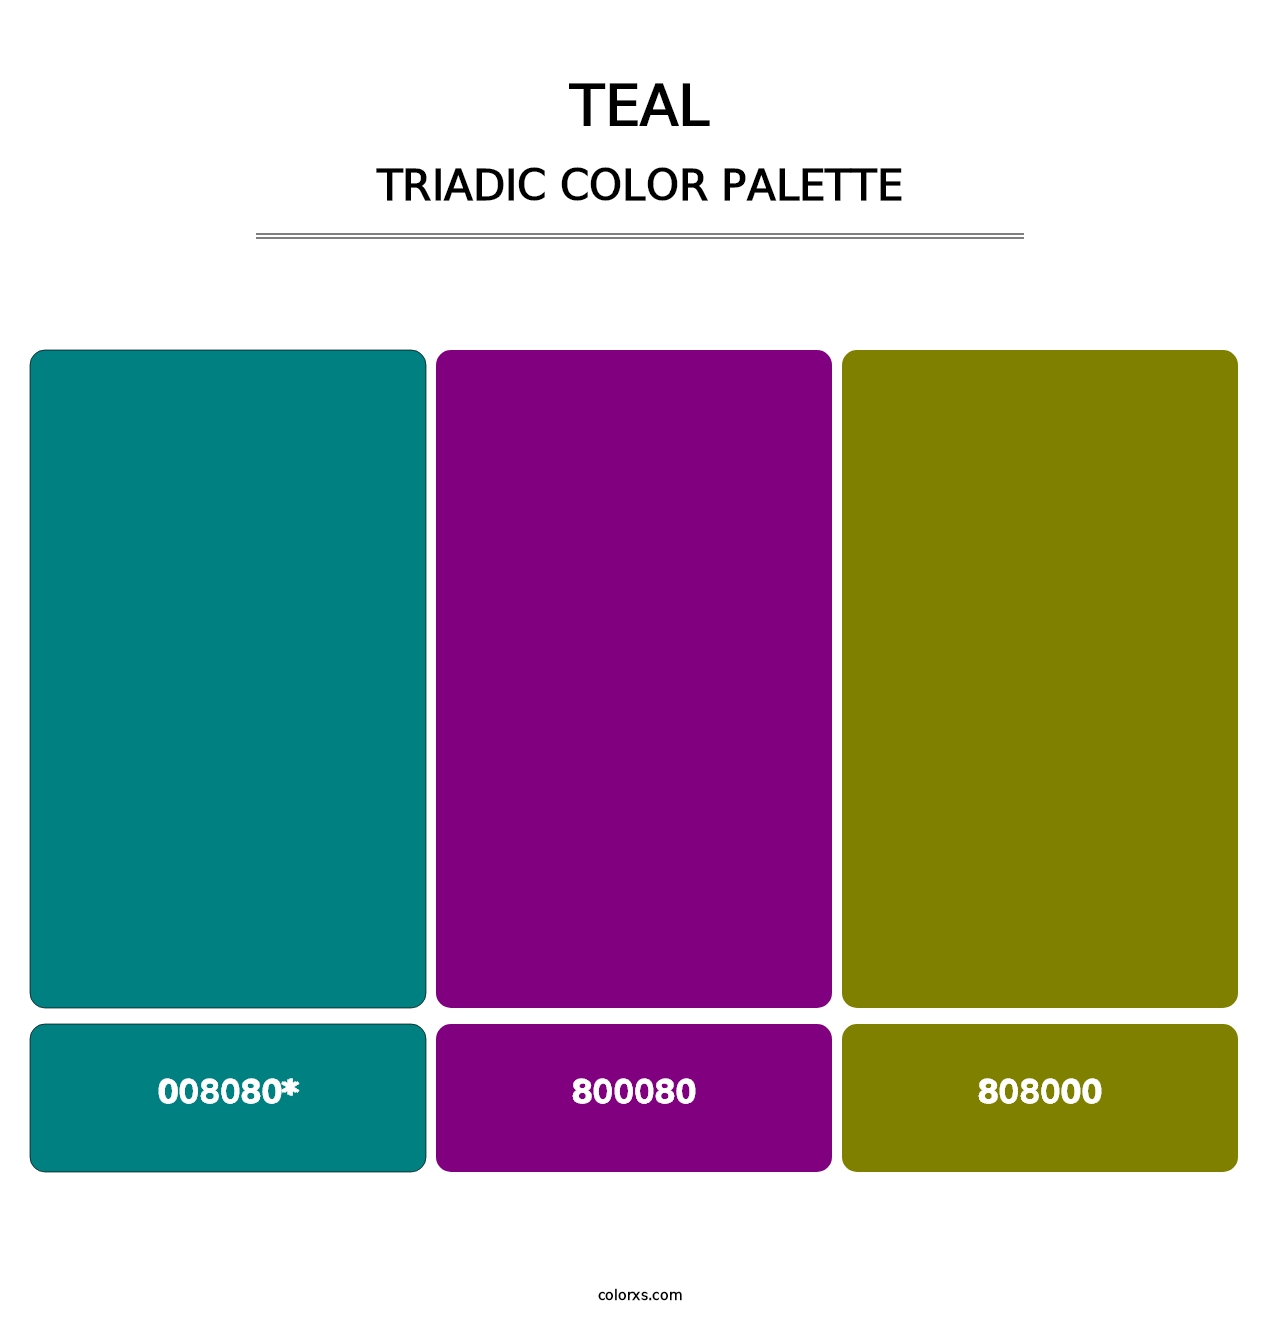 Teal - Triadic Color Palette